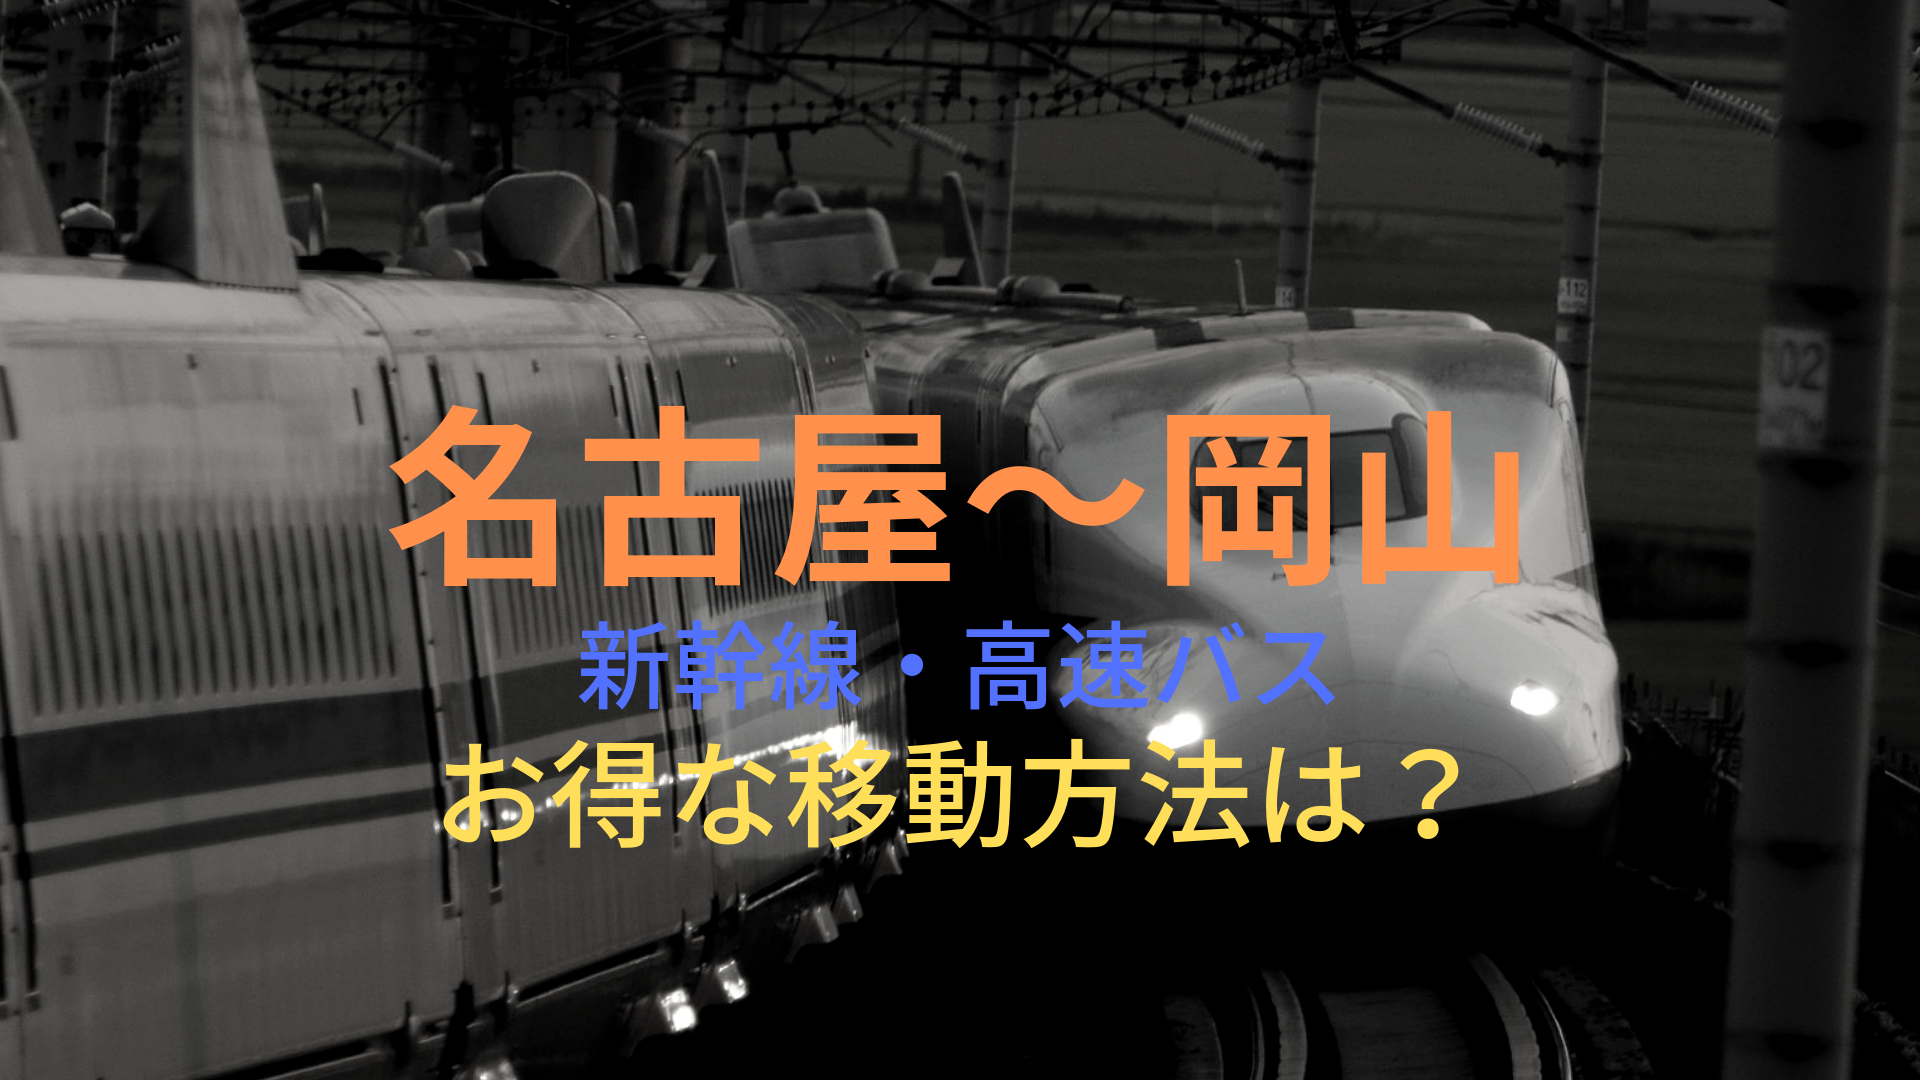 名古屋 岡山 4000円 格安で移動する方法は 新幹線 高速バスをそれぞれ比較 ばしたく交通